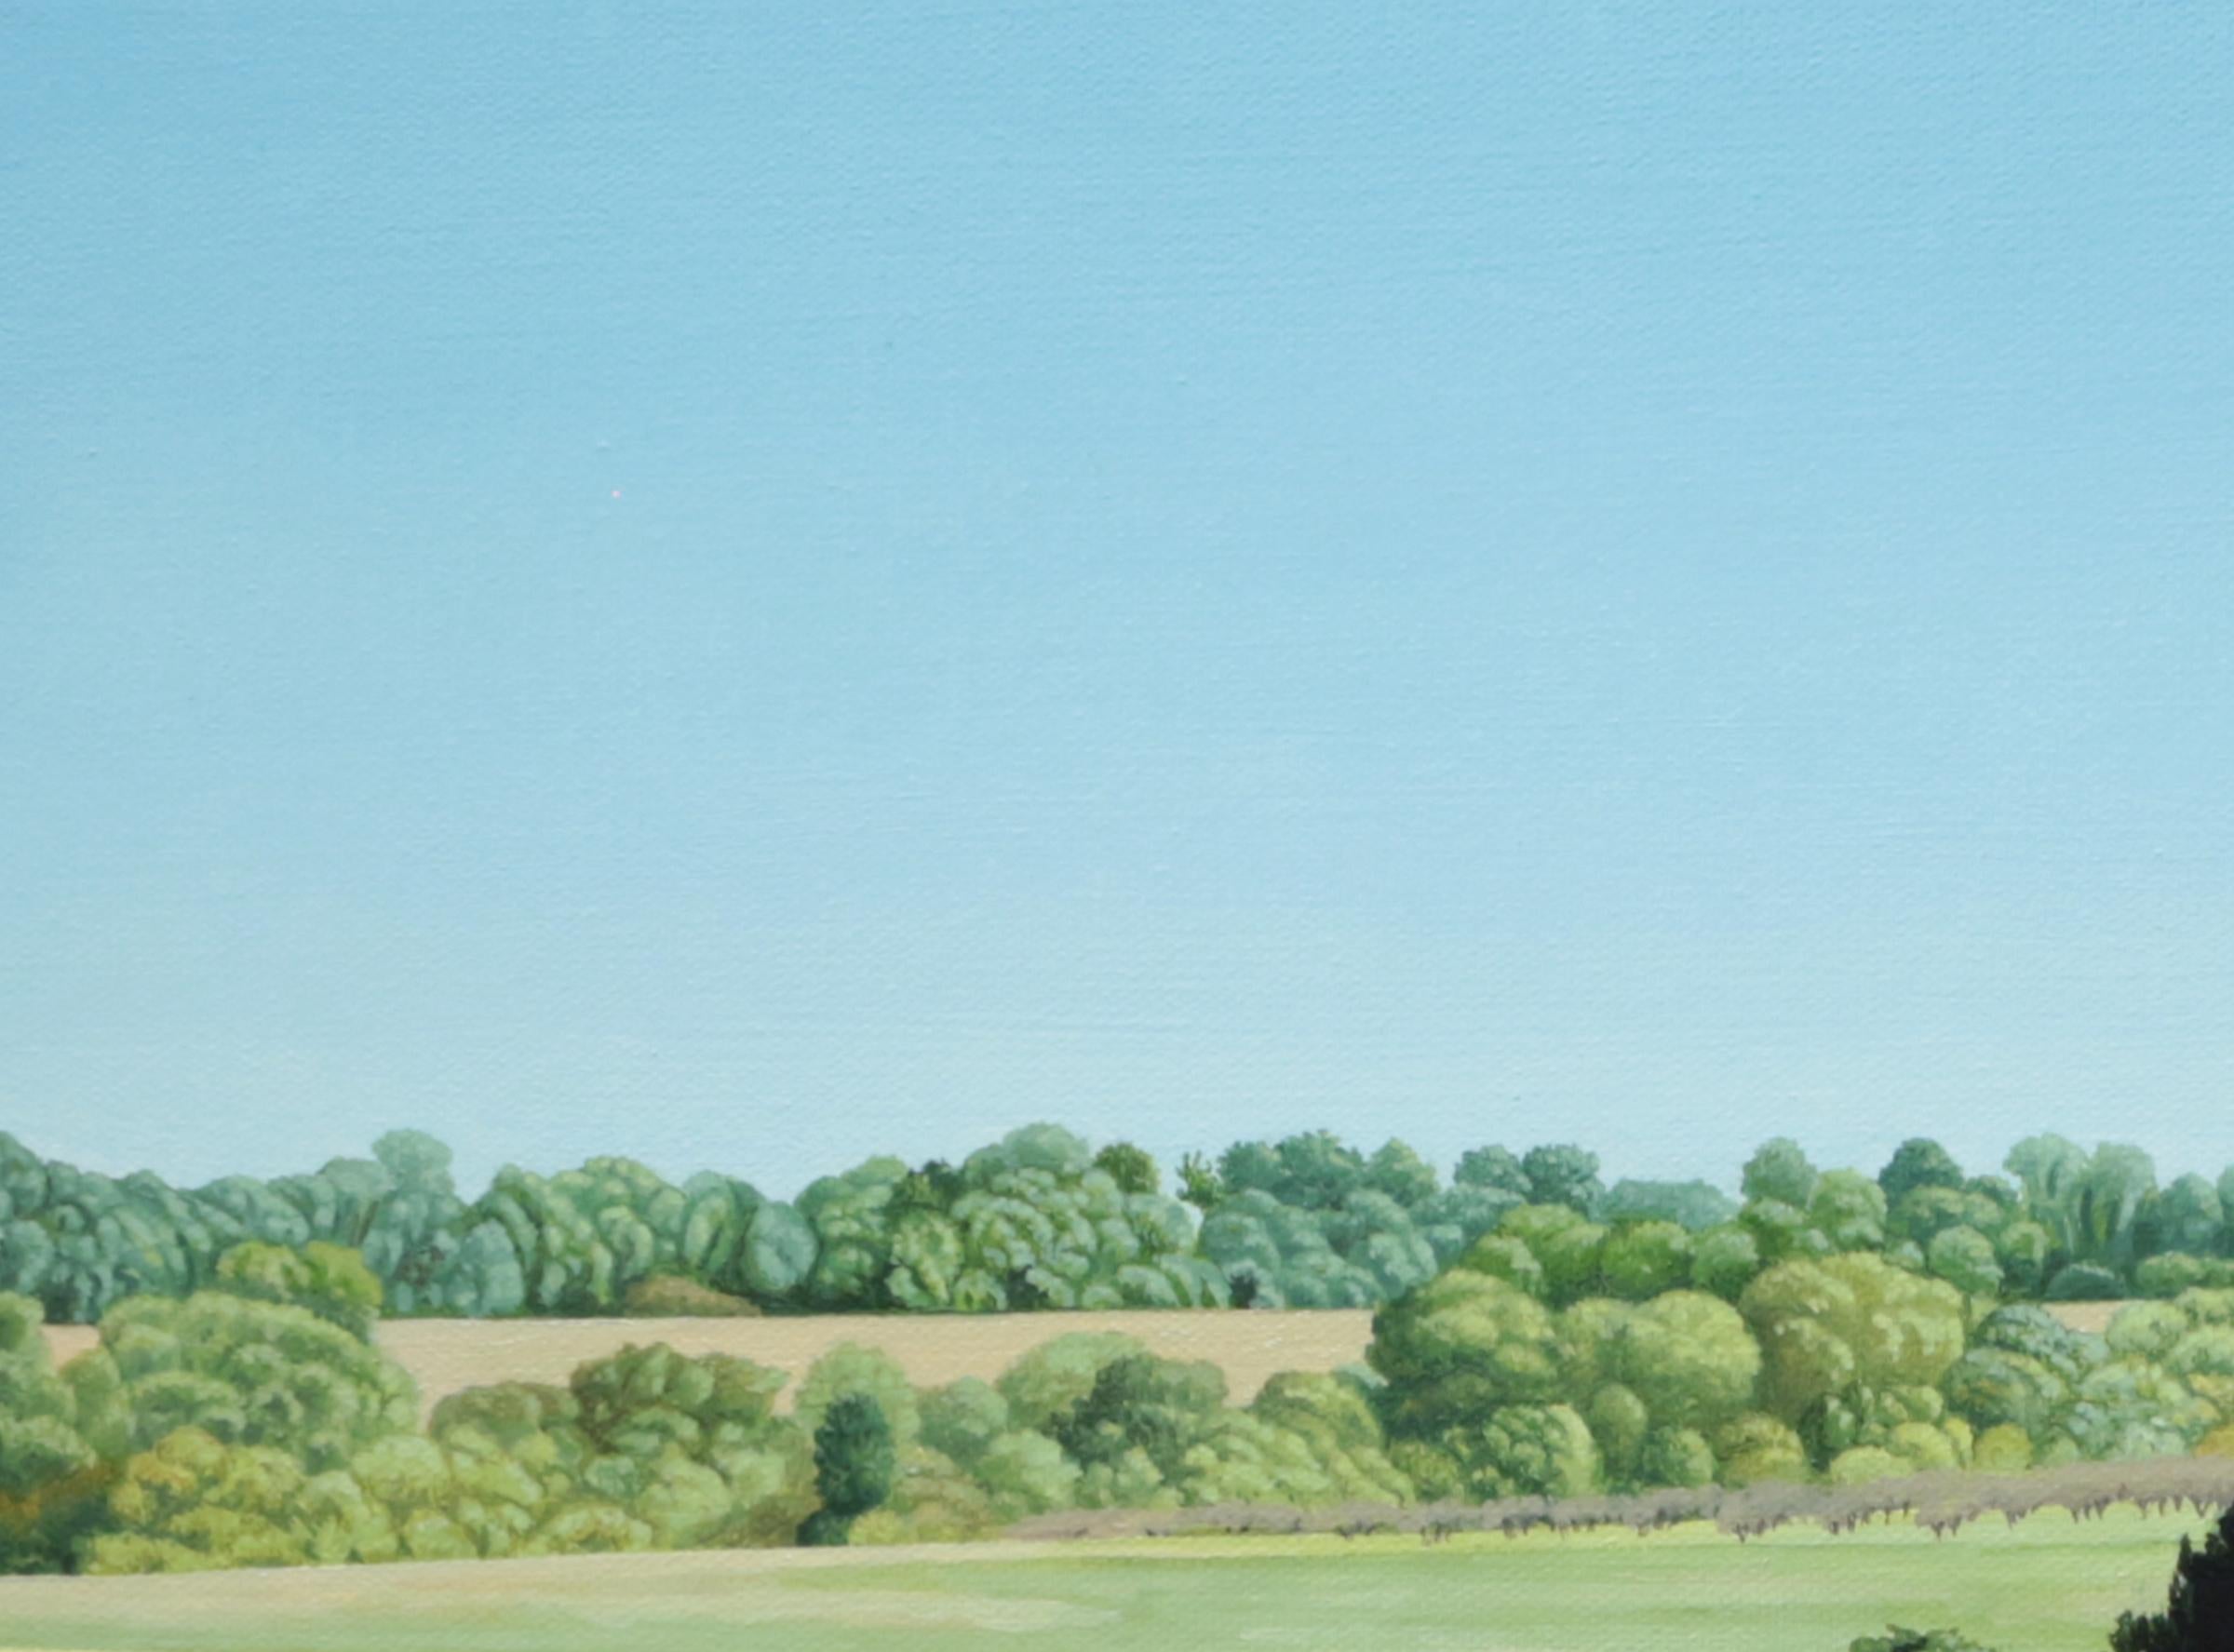 LONG SHADOWS IN THE MORNING – zeitgenössischer Realismus / Country Park / Naturszene (Grün), Landscape Painting, von Anita Mazzucca